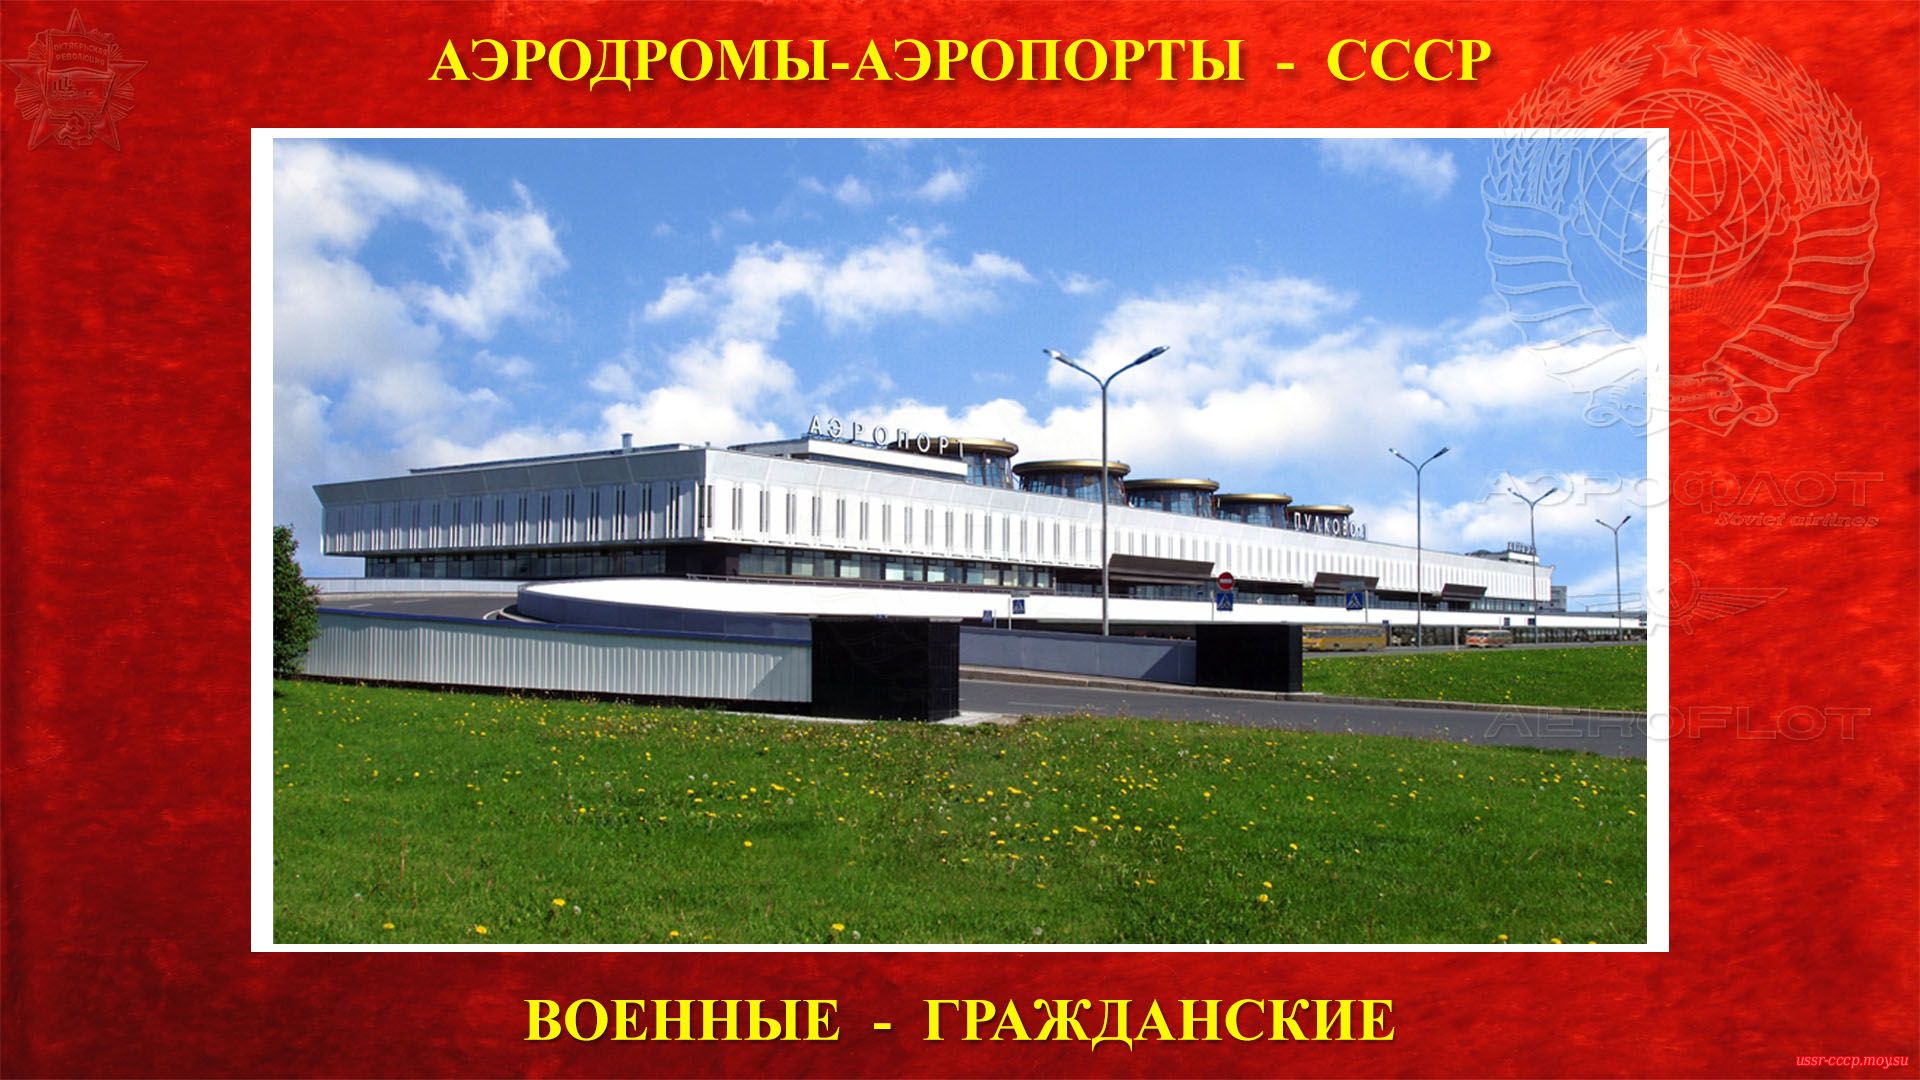 Пулково — Международный аэропорт СССР (1973—1991)